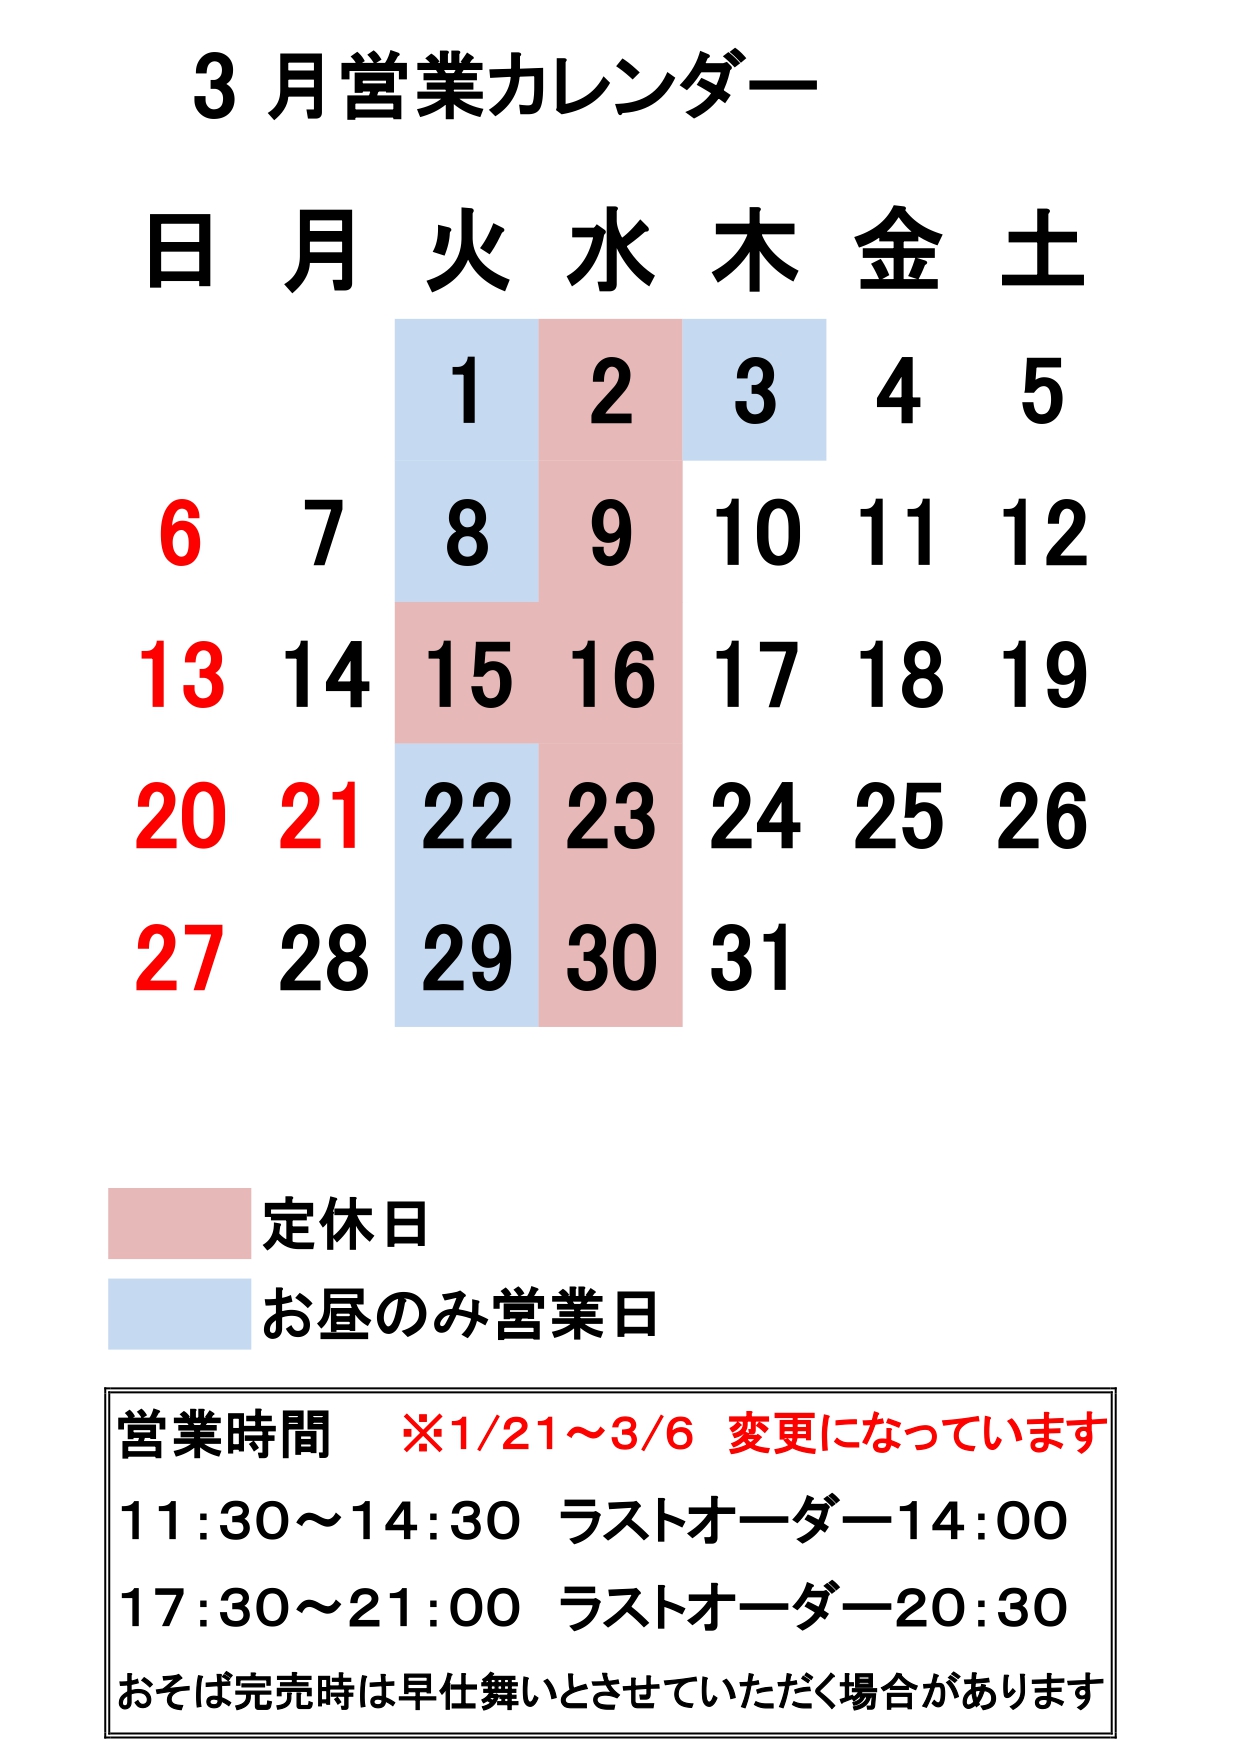 営業カレンダー3_page-0001.jpg